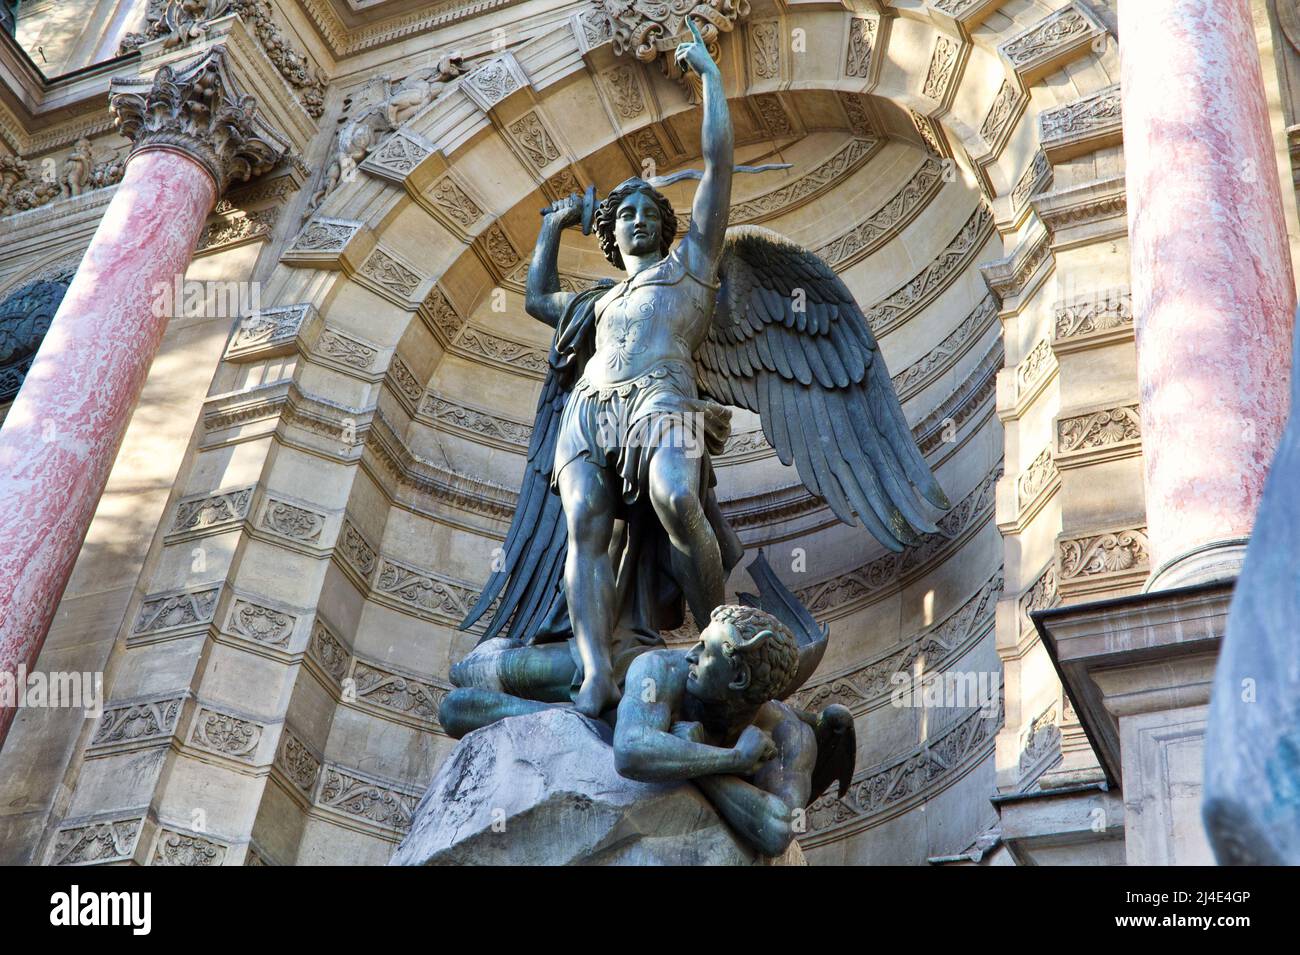 Saint Michael the Archangel slaying Satan (by Francisque-Joseph Duret, 1860)- Saint Michael Fountain, place Saint-Michel - Paris Stock Photo